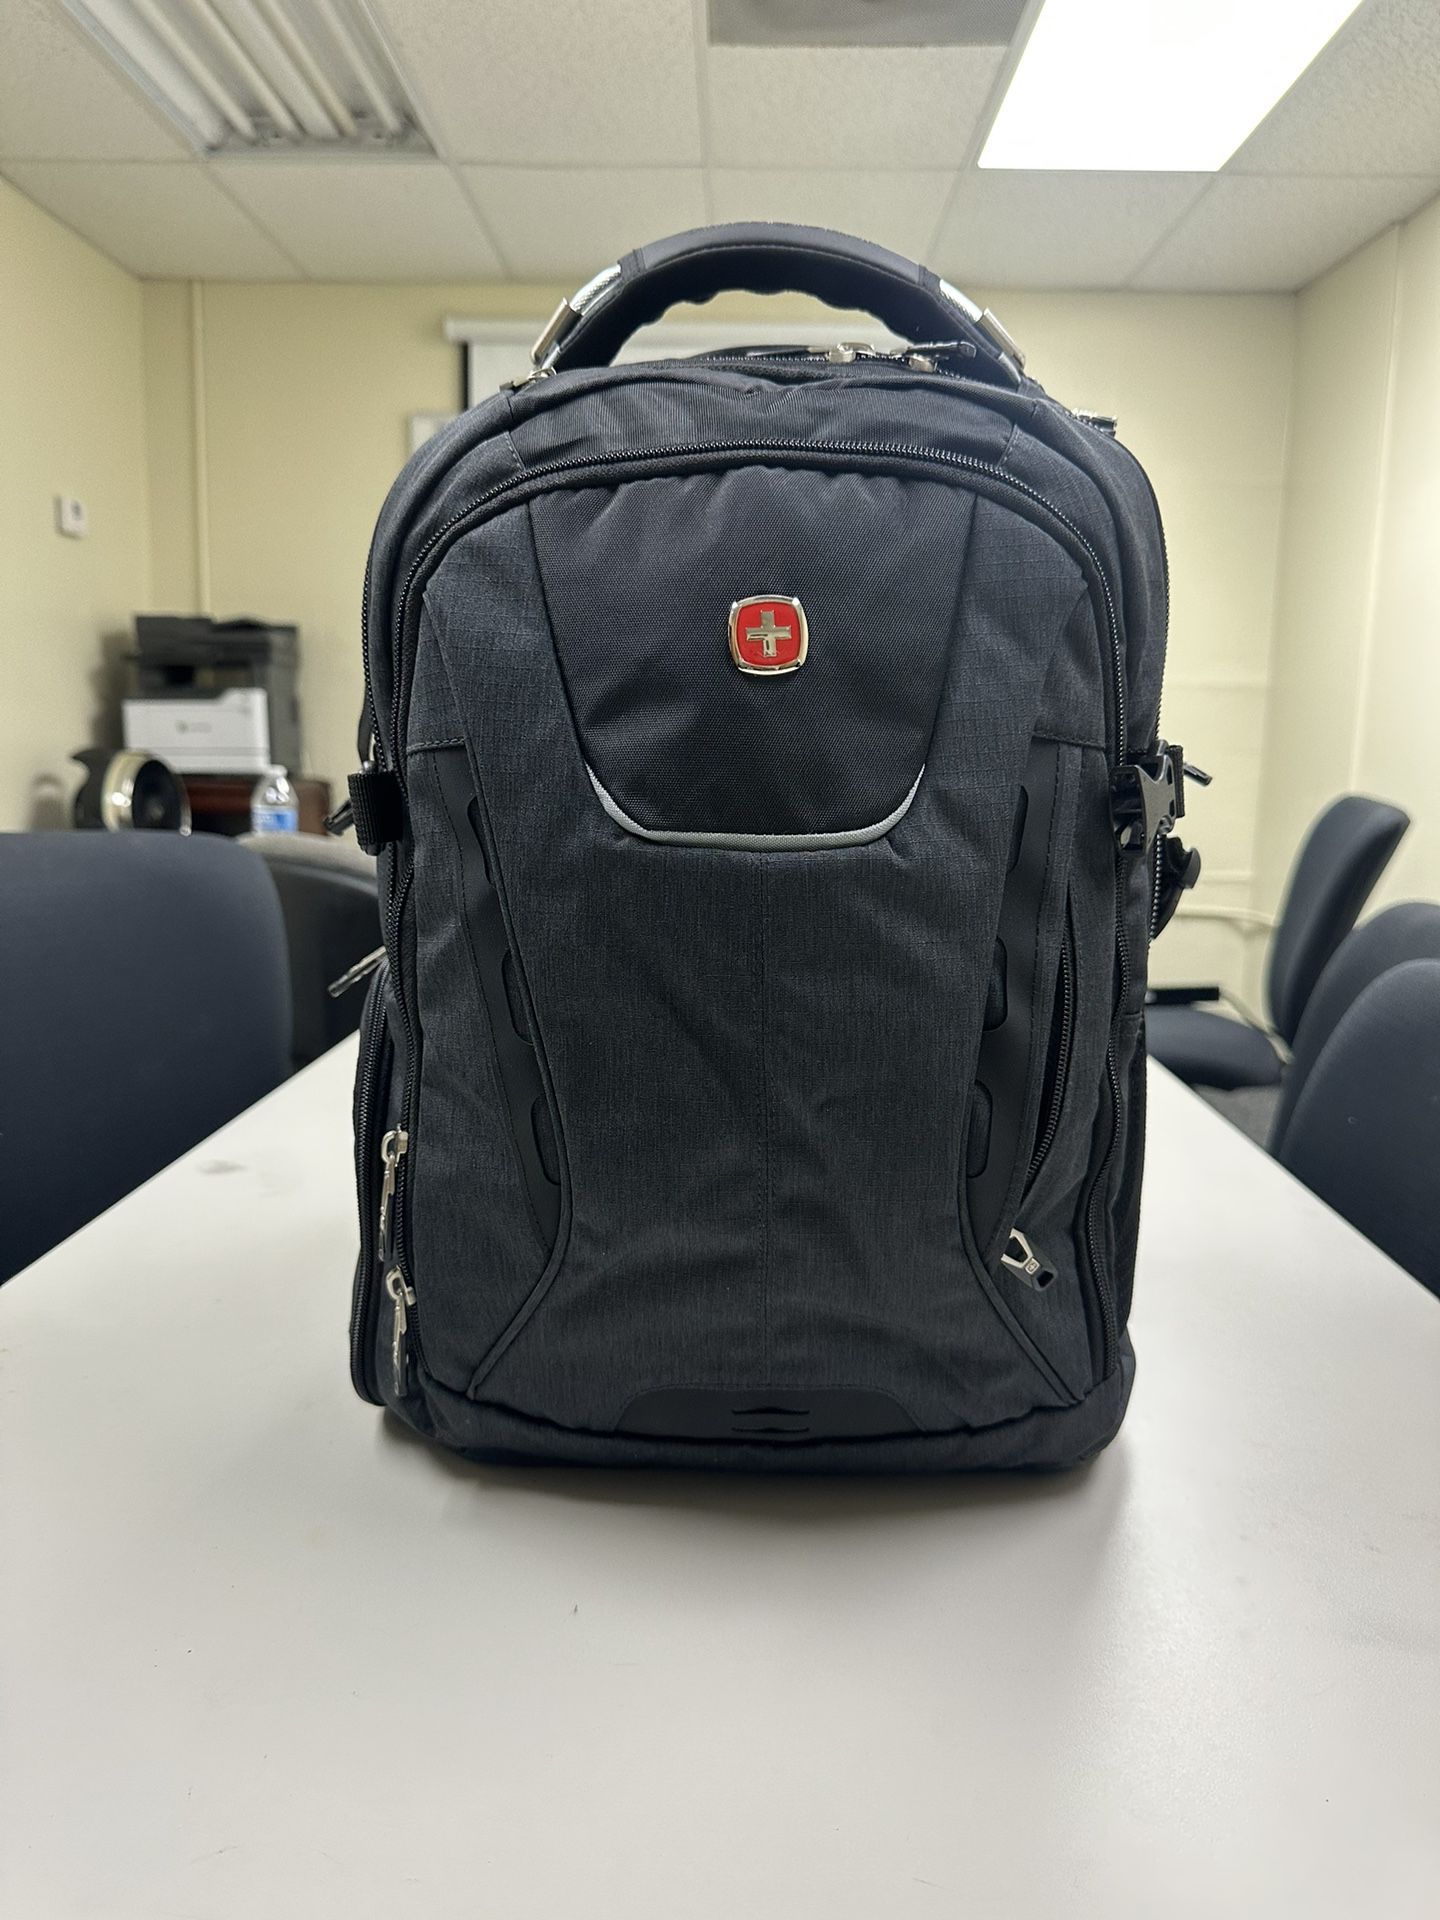 Swiss Gear USB ScanSmart TSA Laptop Backpack